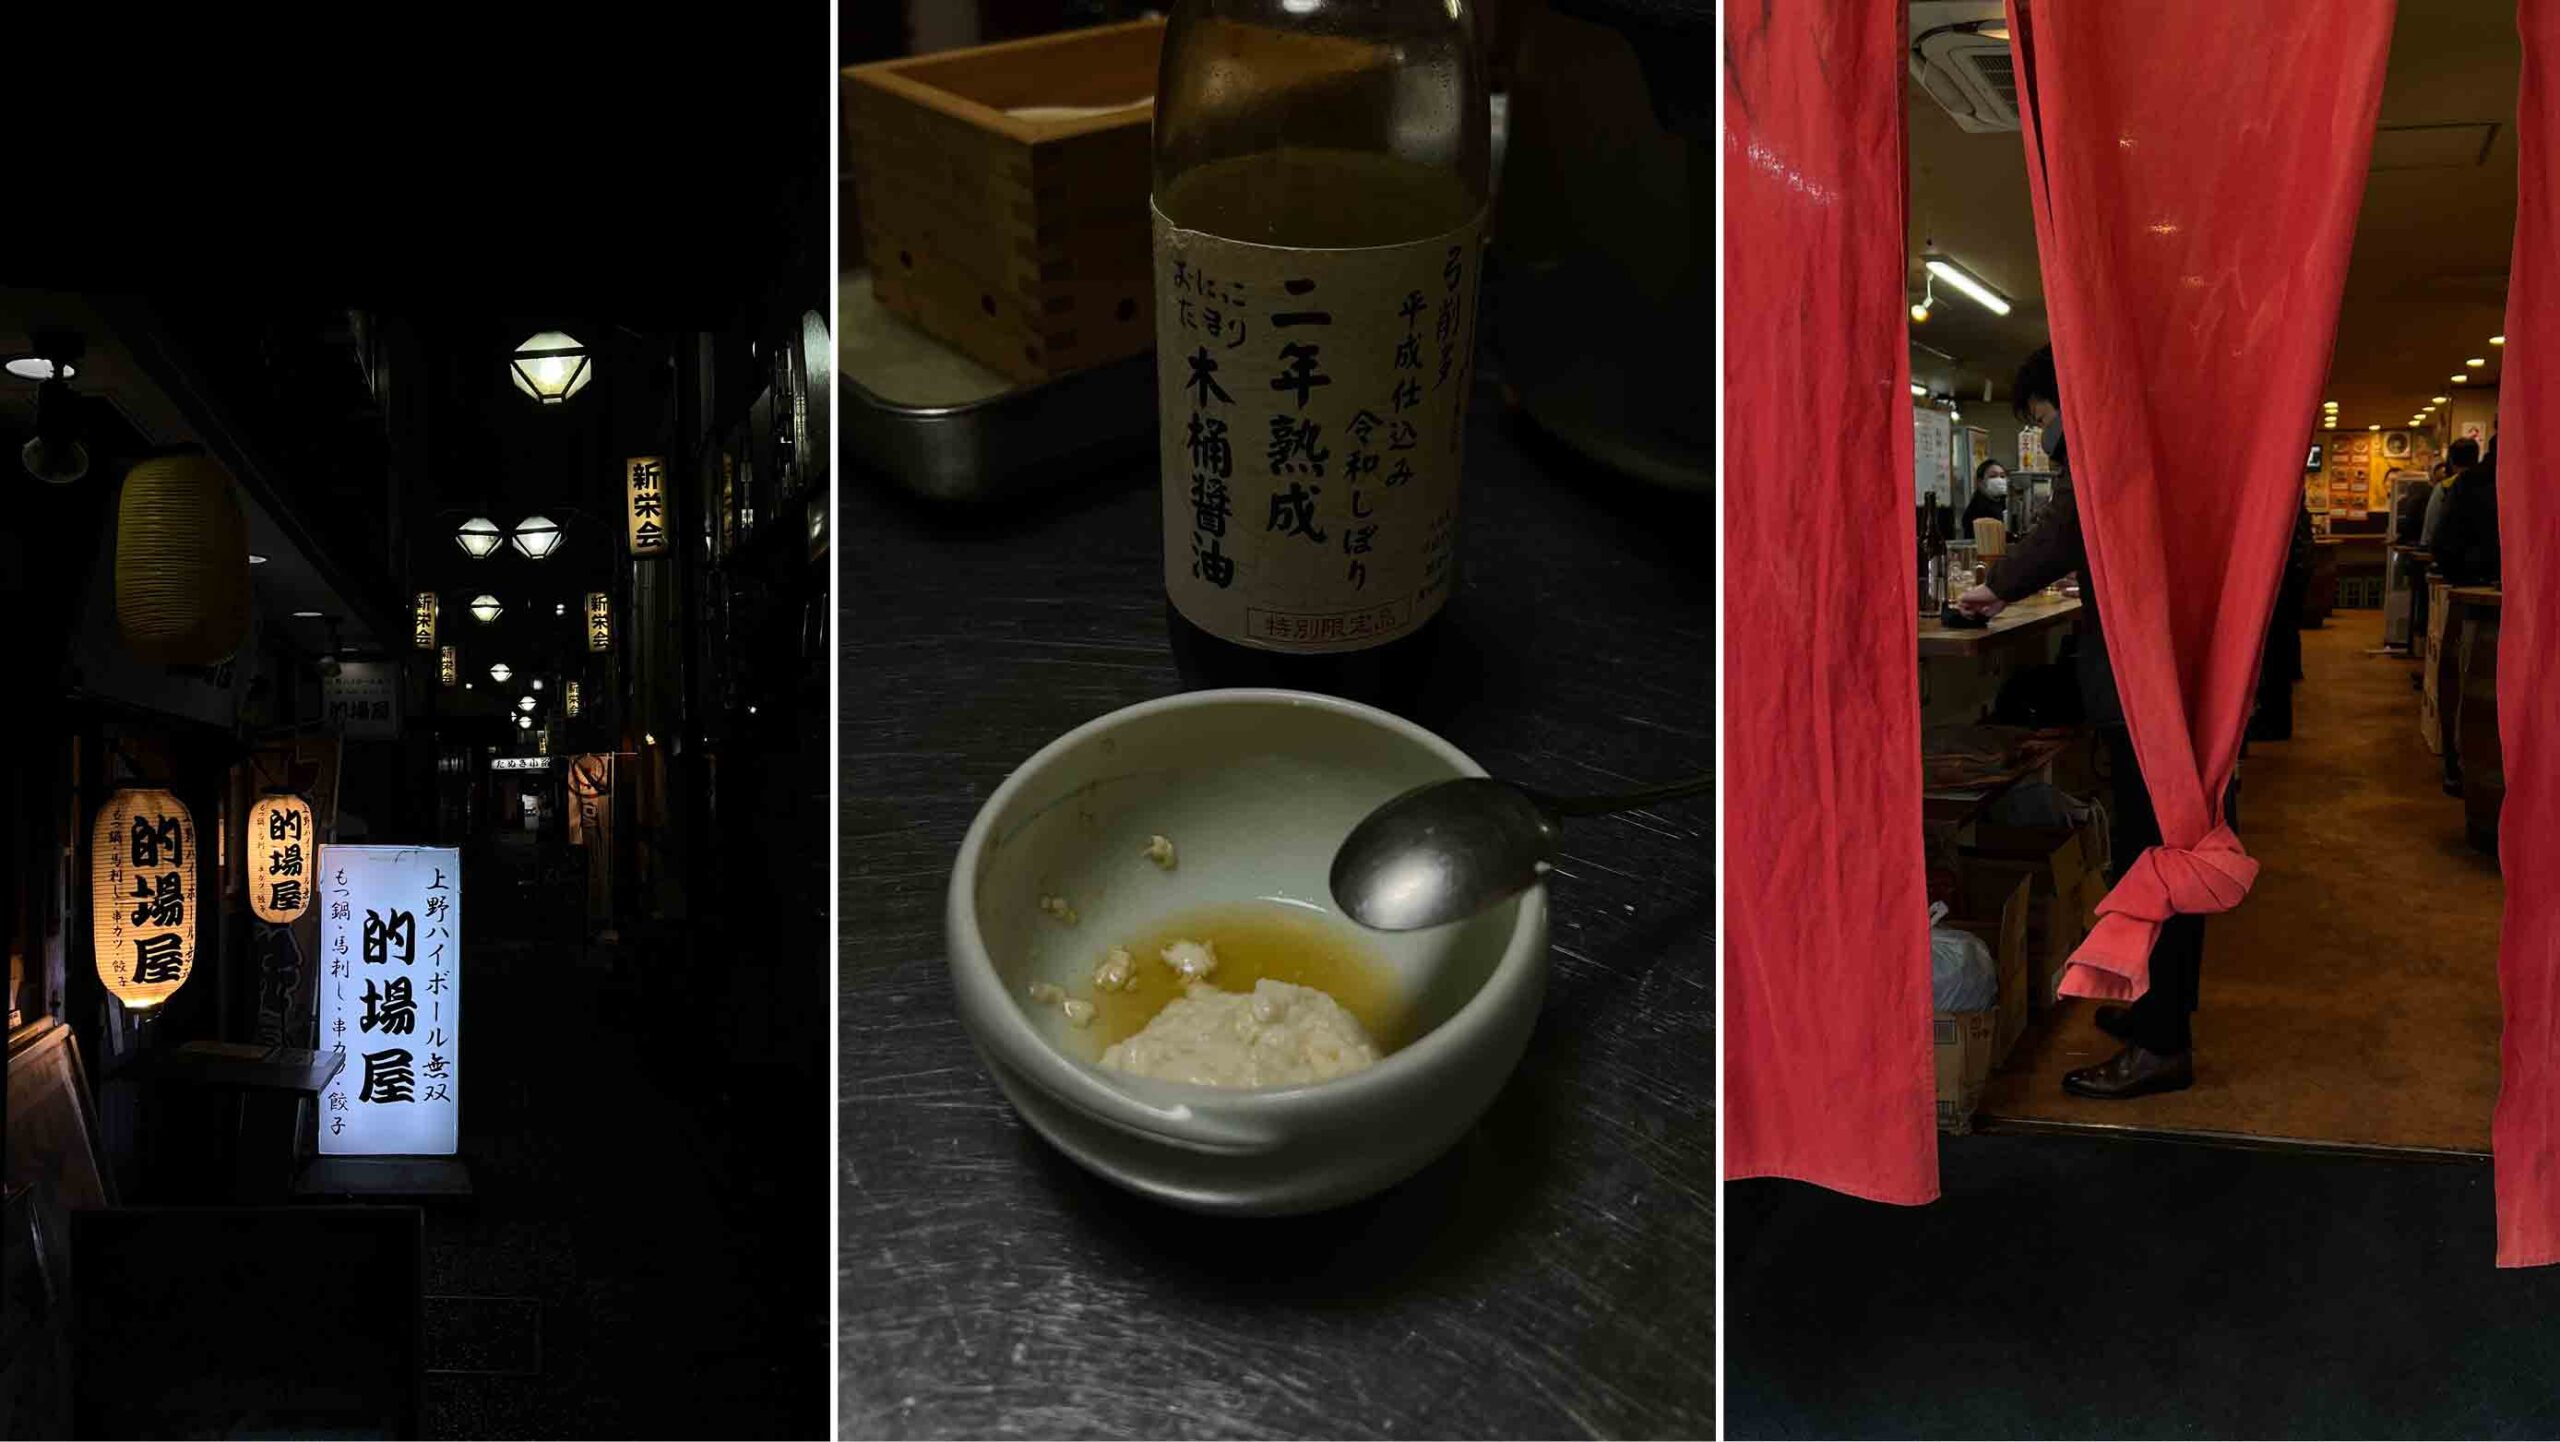 Japanilaista ruokaa kulhossa ja traditioihin nojaavaa tunnelmaa Tokion ravintolakujilla.